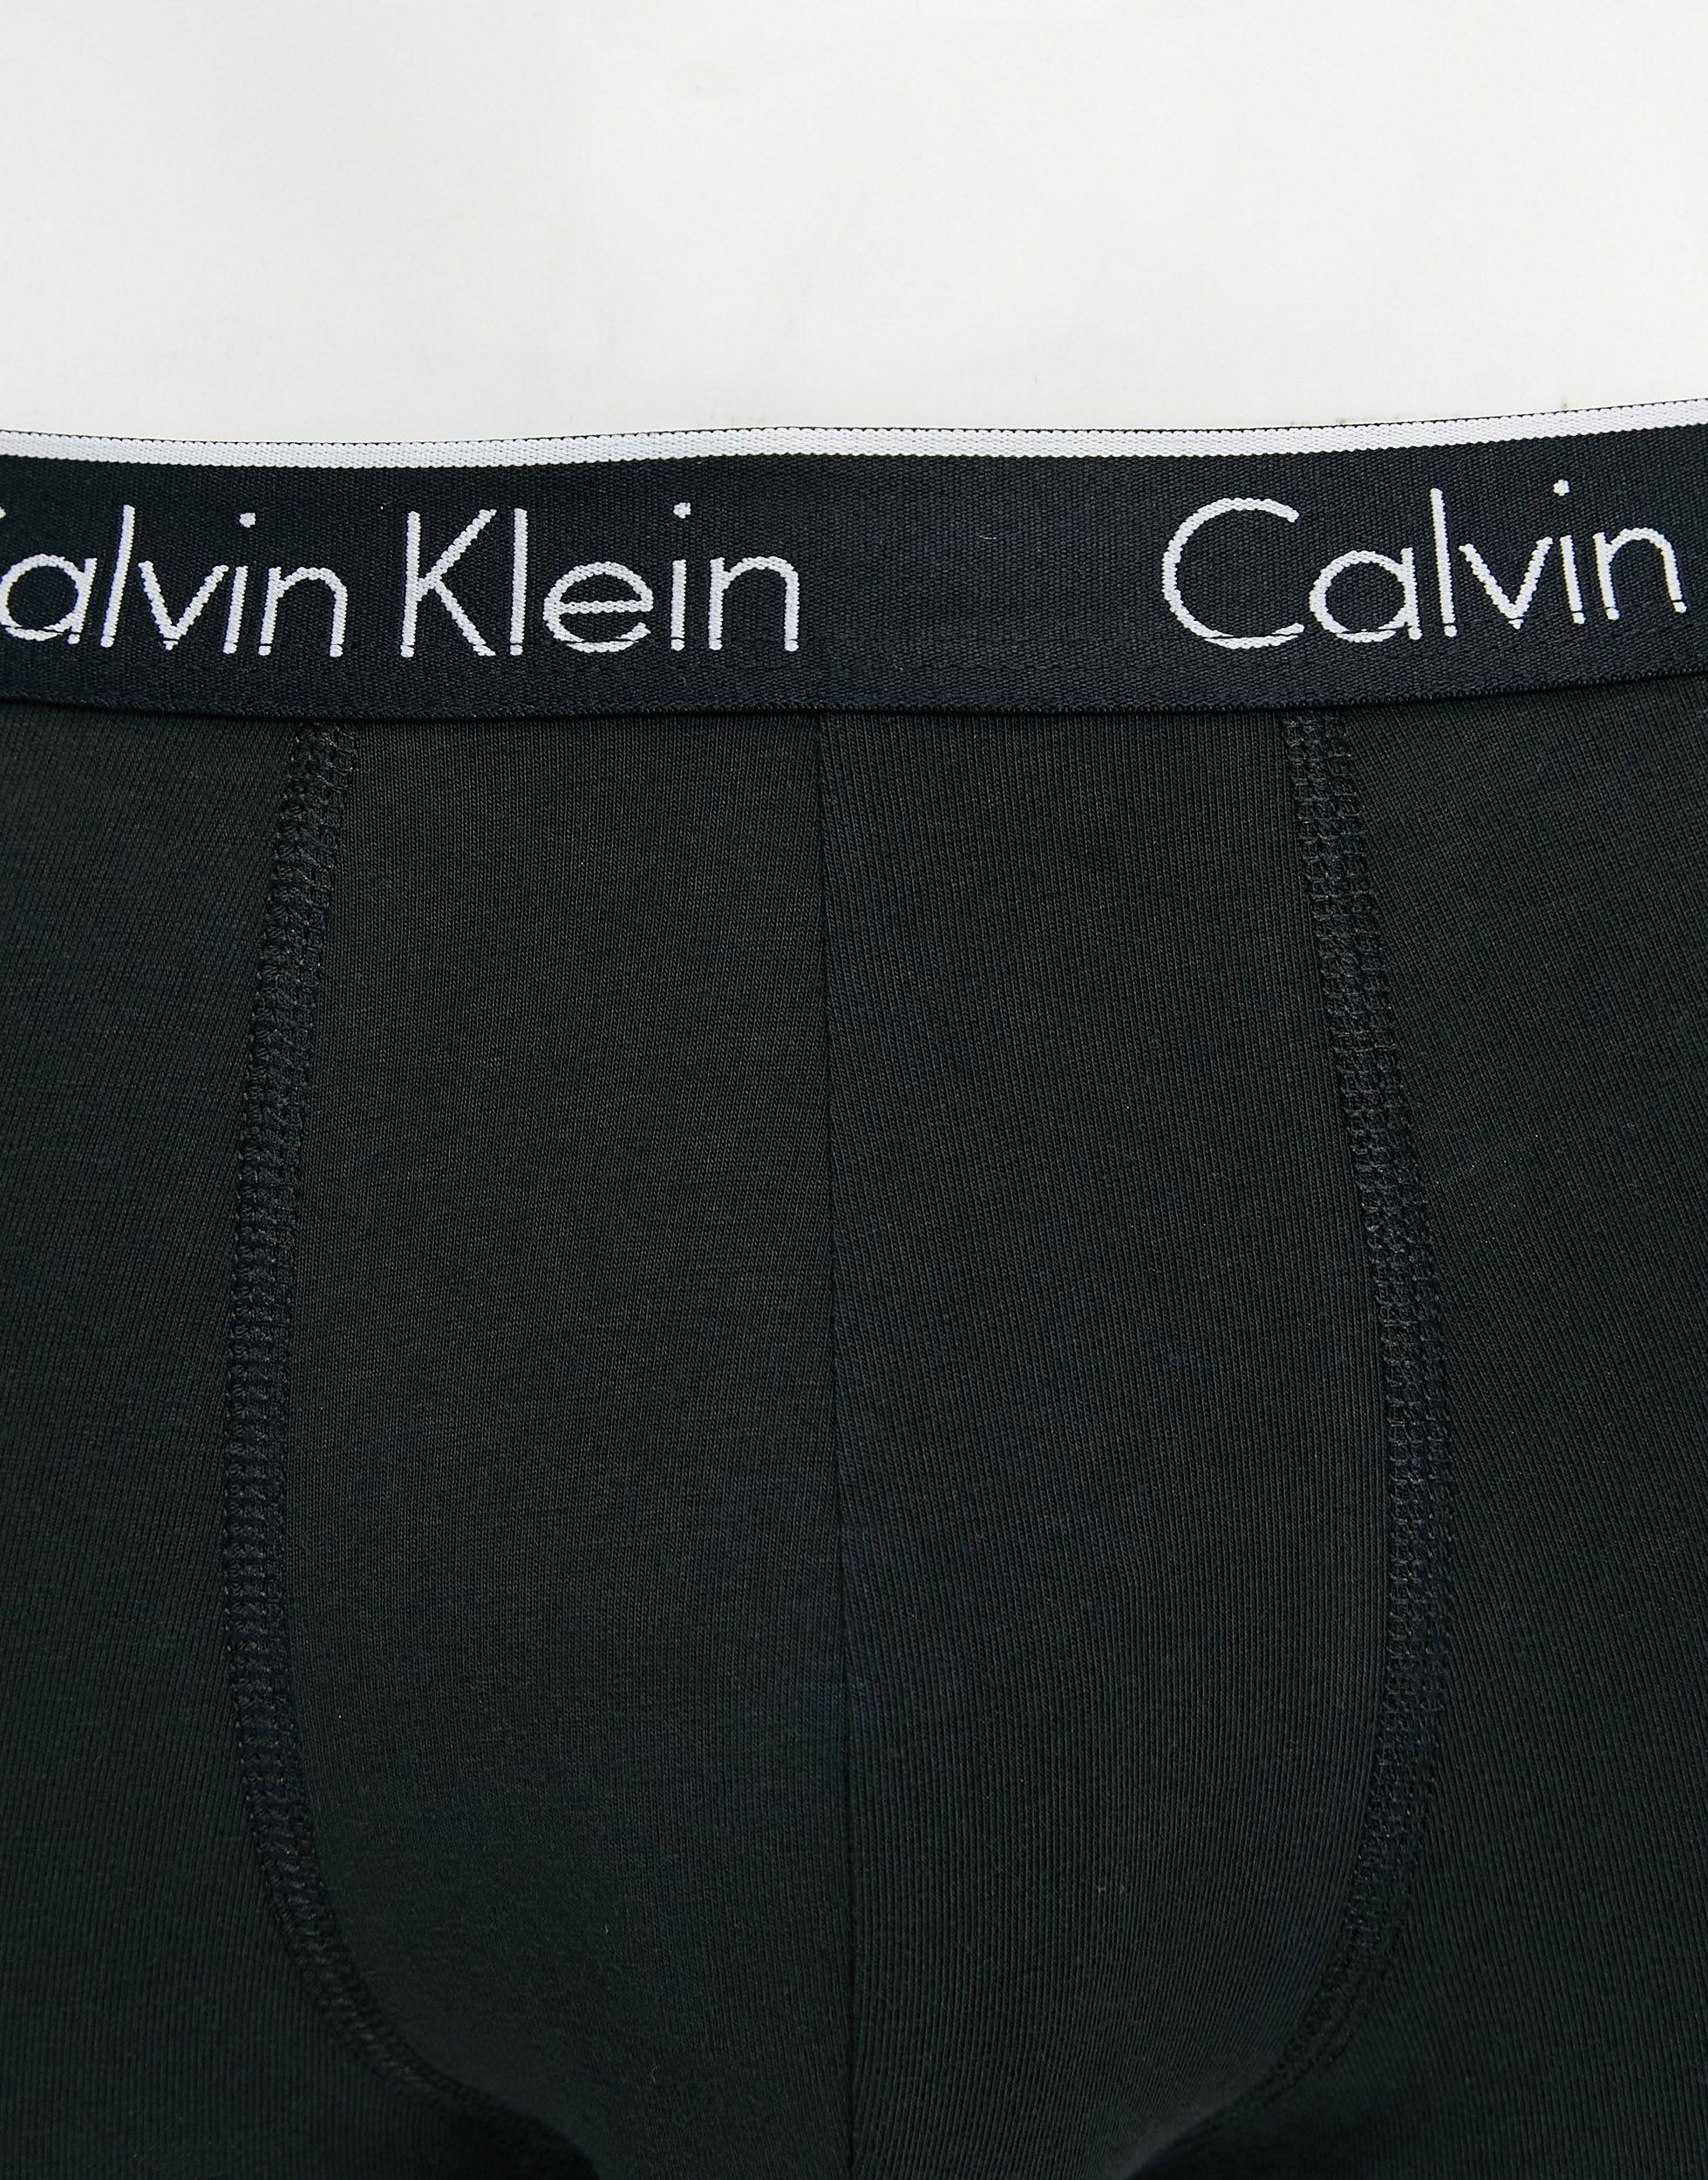 Calvin Klein 2 Pack Trunks With Logo Waistband in Black for Men - Lyst